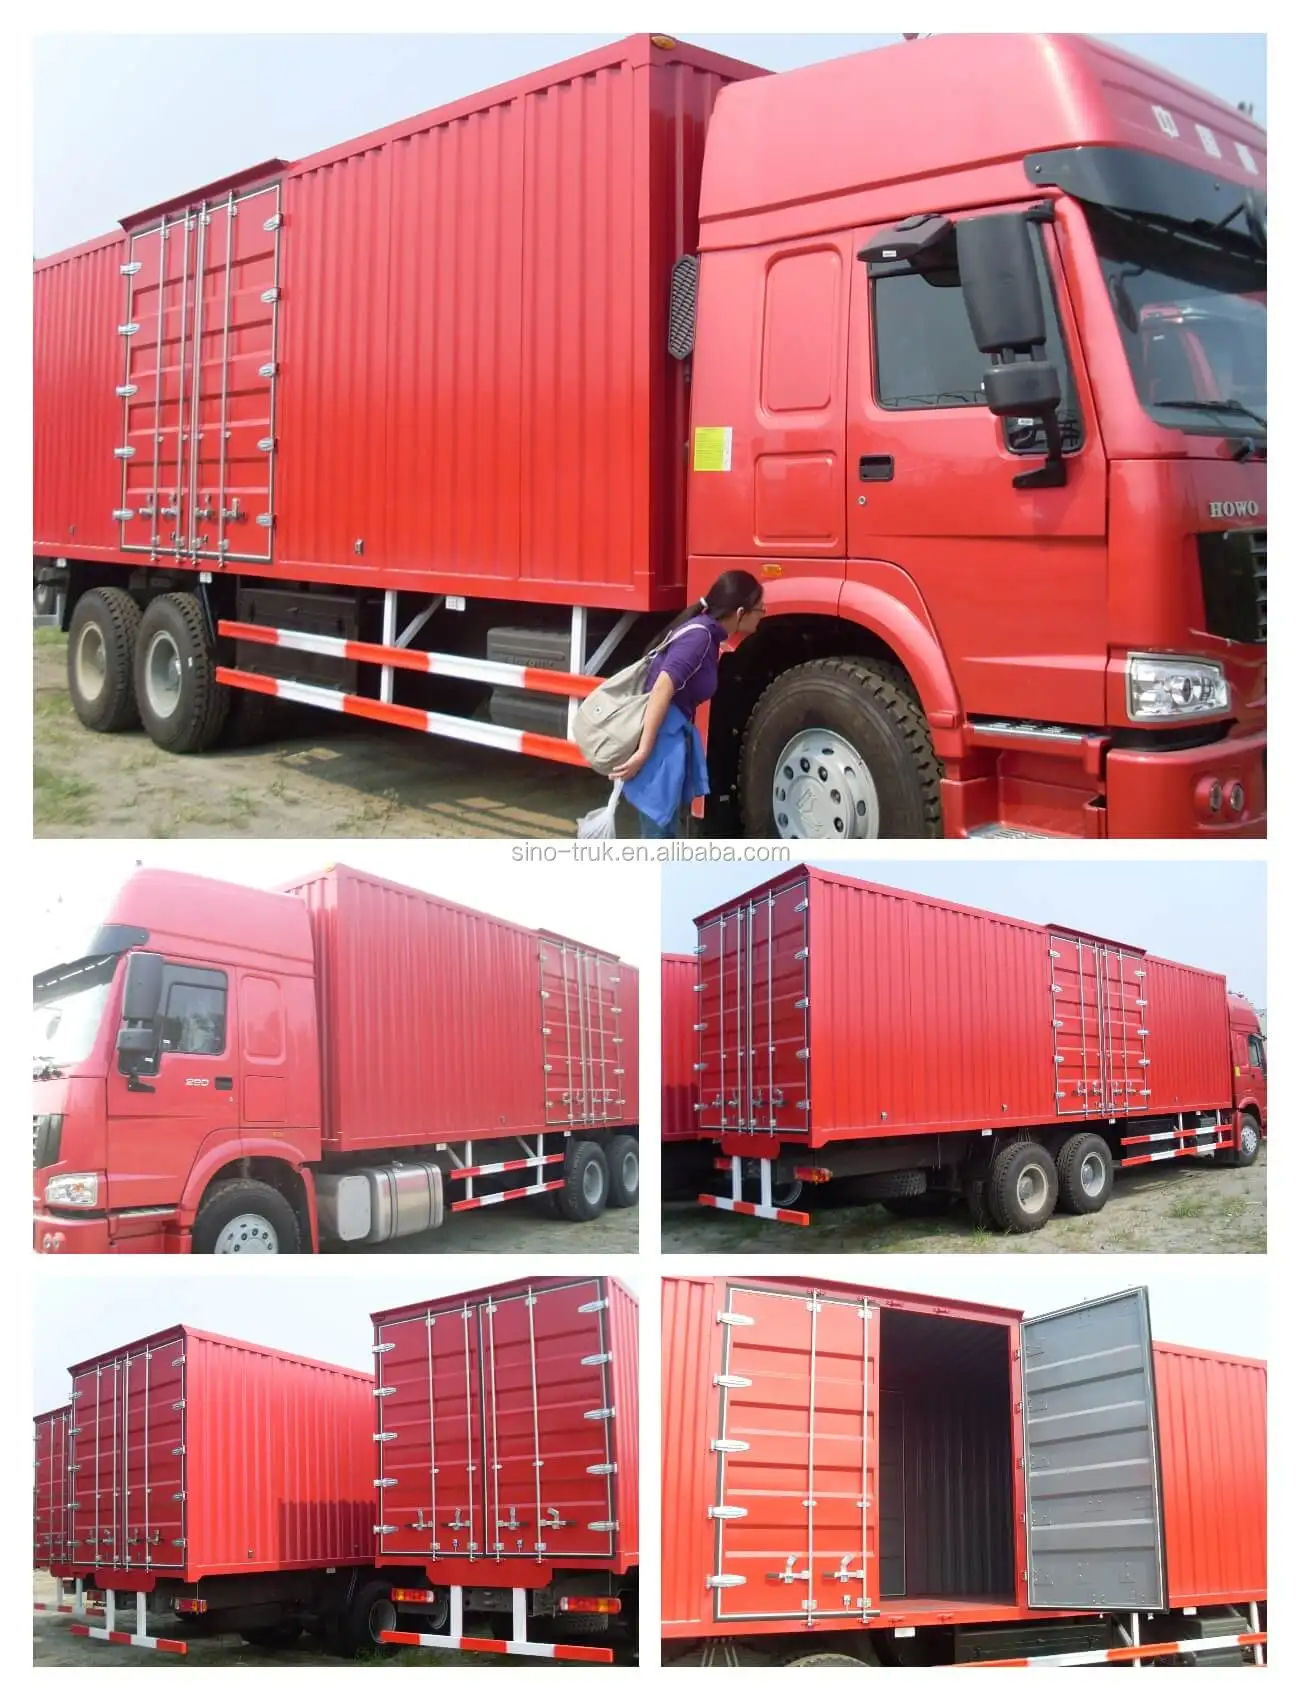 中国重汽 howo 4x2 16 吨迷你货车货箱卡车运输